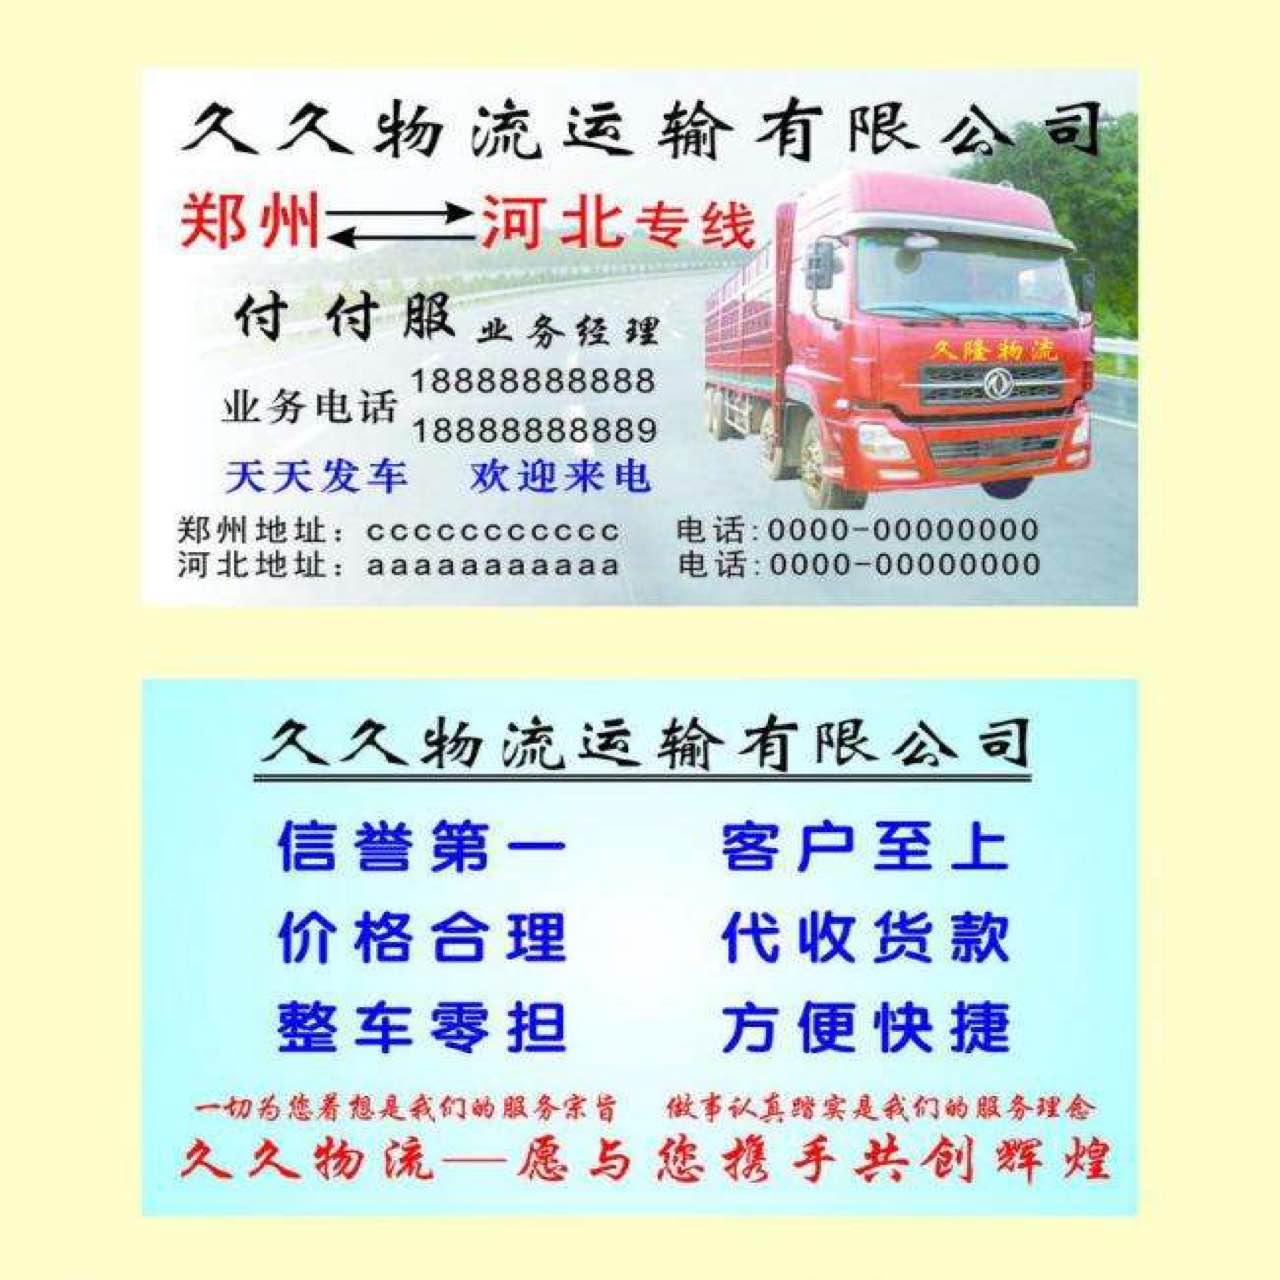 河北到郑州专线 每日发货 轻重货物全收 价格全市最低